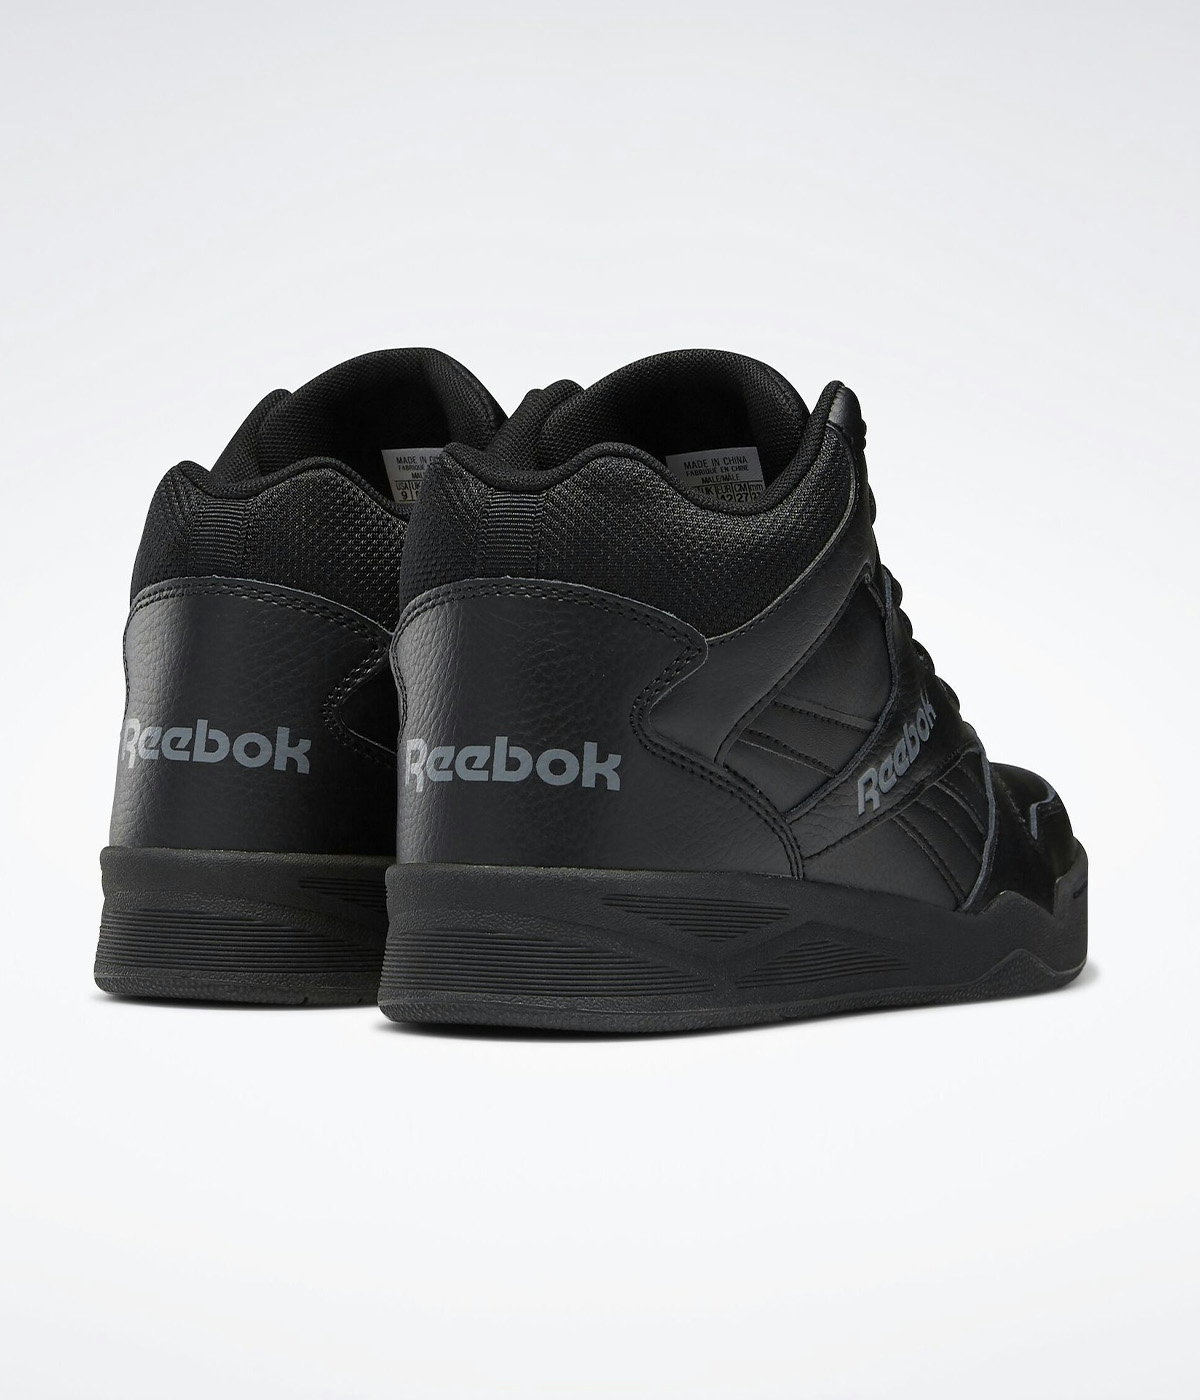 Reebok Reebok Royal BB4500 Shoes Black/Alloy 2